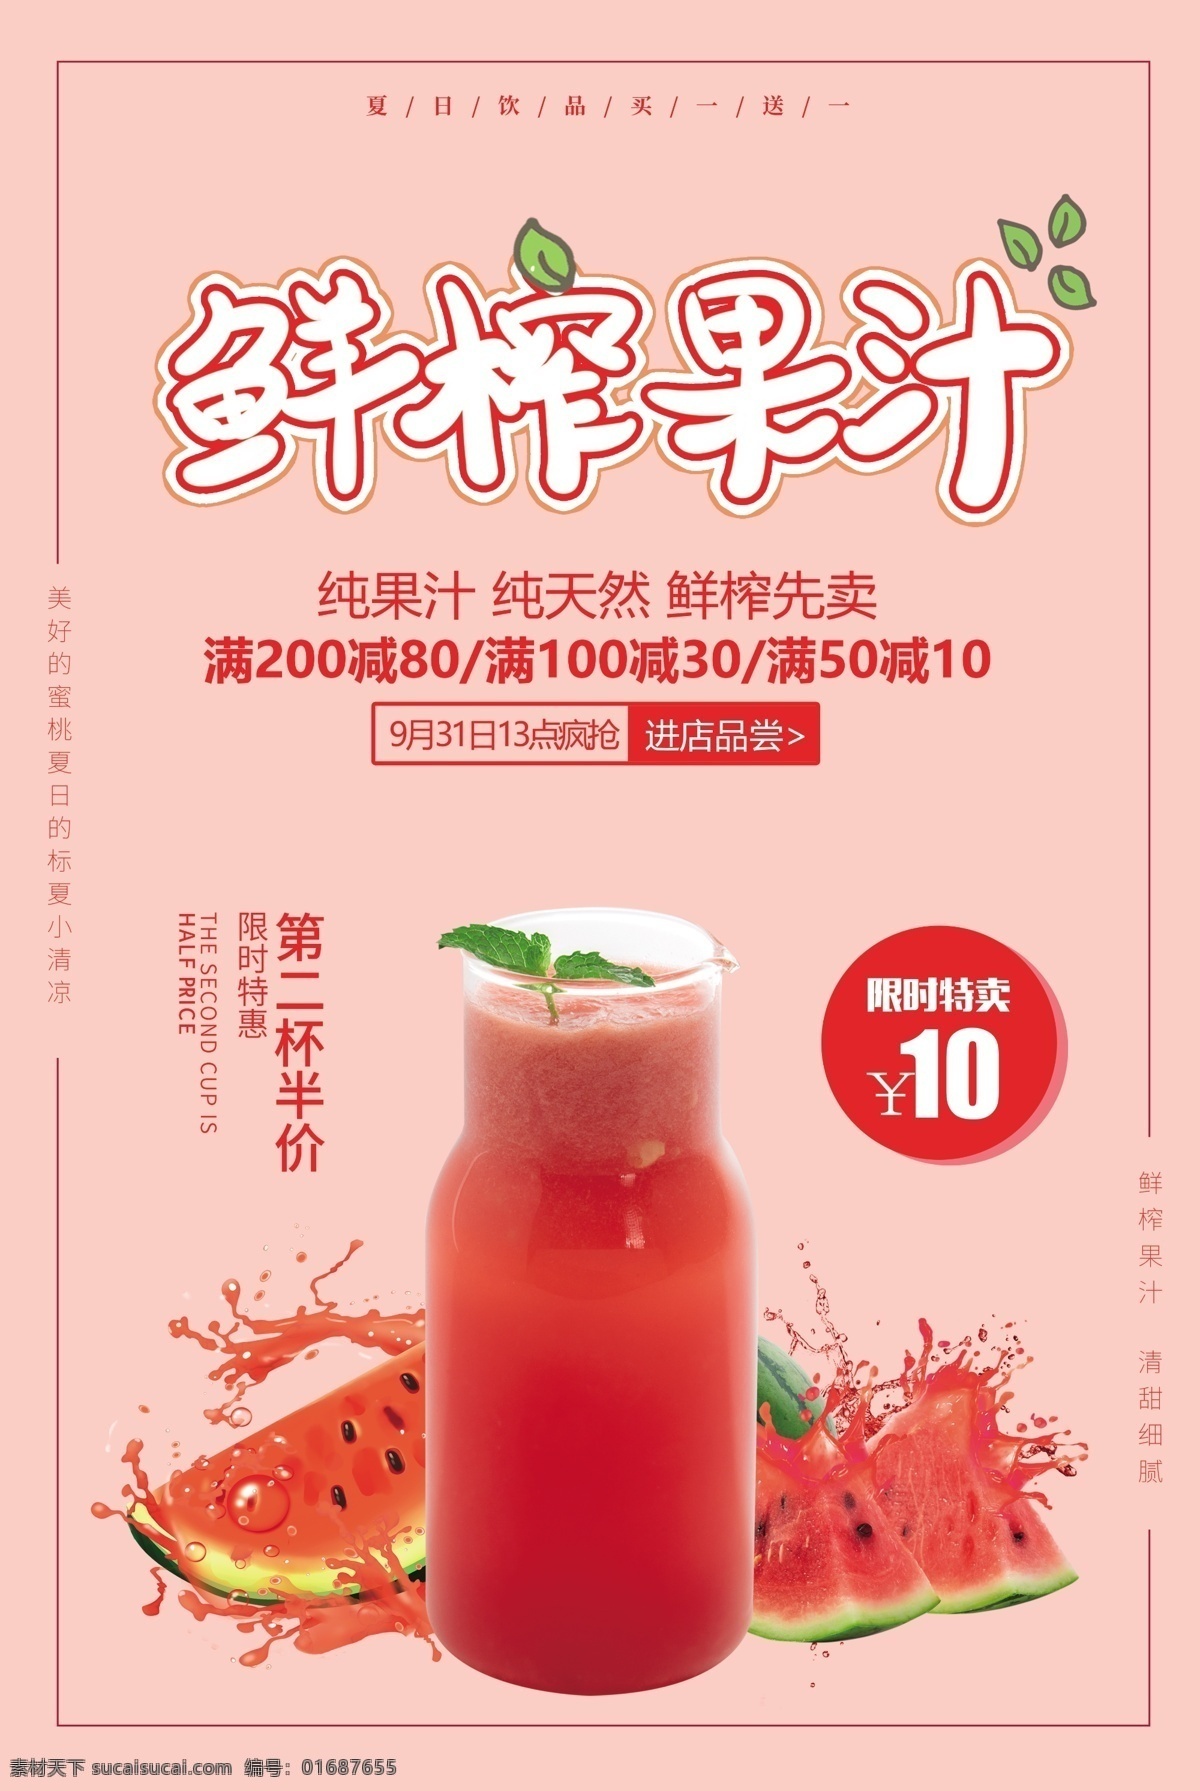 鲜榨 果汁 饮品 活动 海报 素材图片 鲜榨果汁 饮料 甜品 类